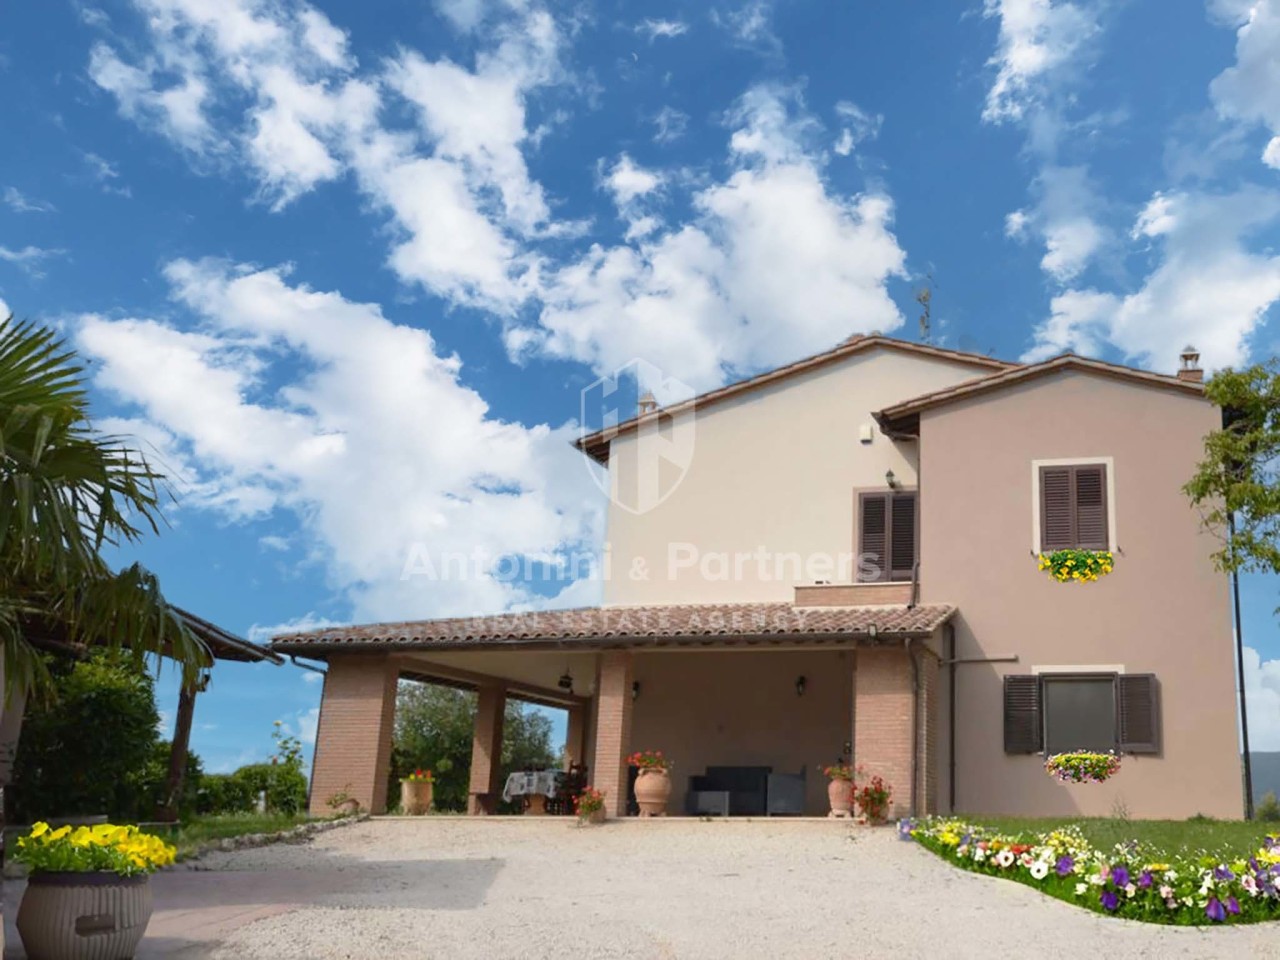 Villa in vendita a Collazzone, 9 locali, prezzo € 530.000 | PortaleAgenzieImmobiliari.it